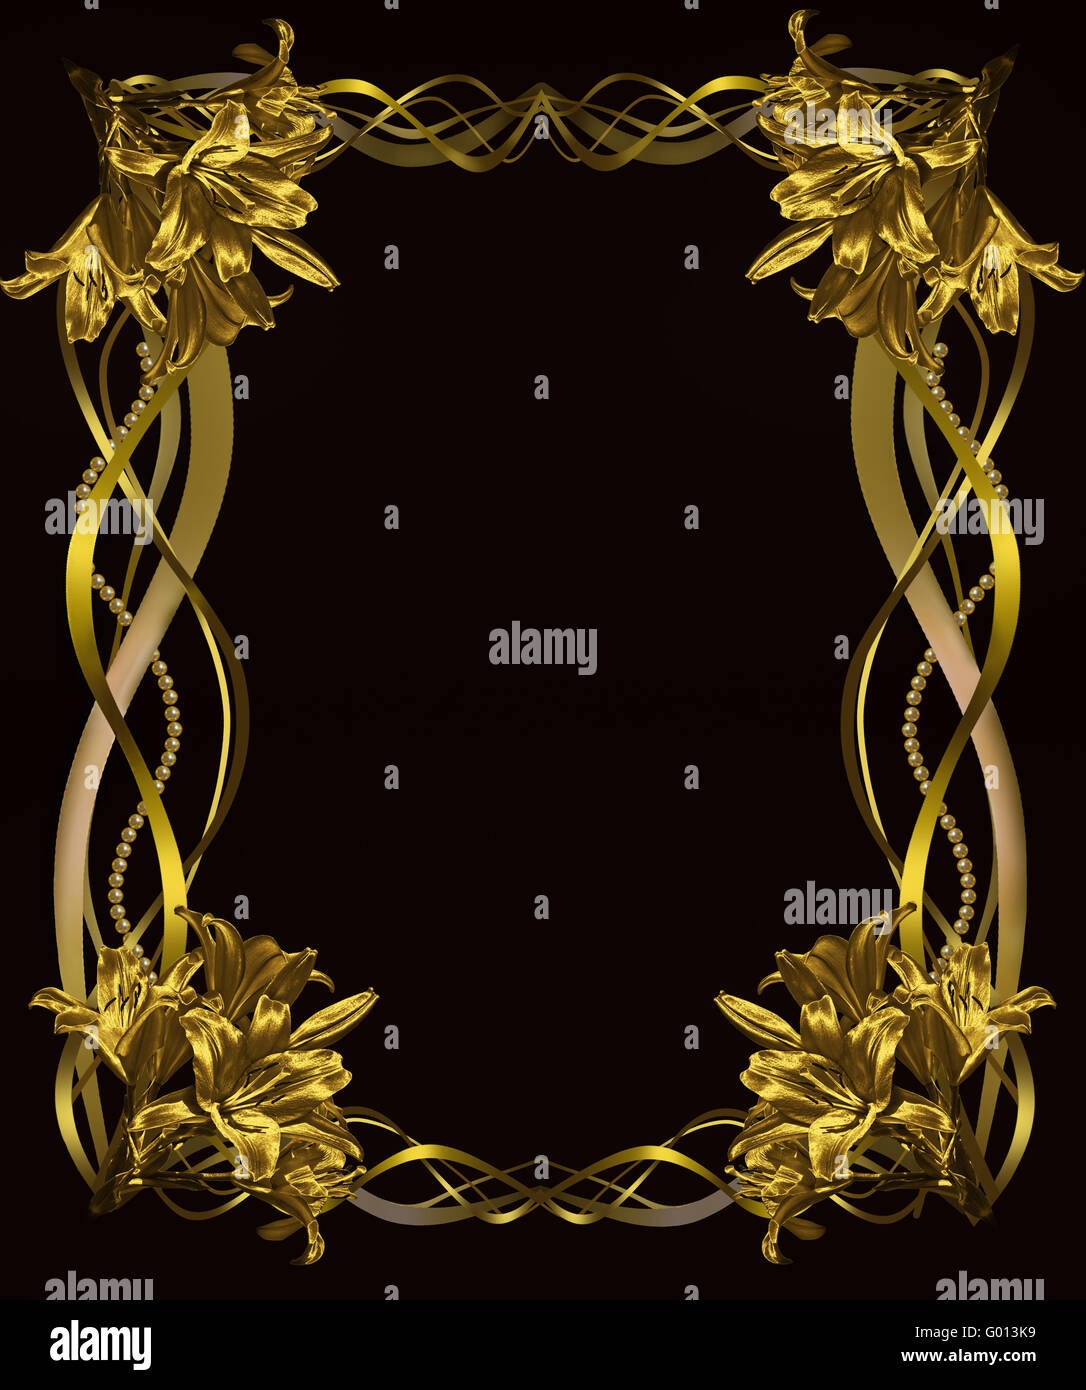 Fond noir avec cadre de lys d'Or Photo Stock - Alamy